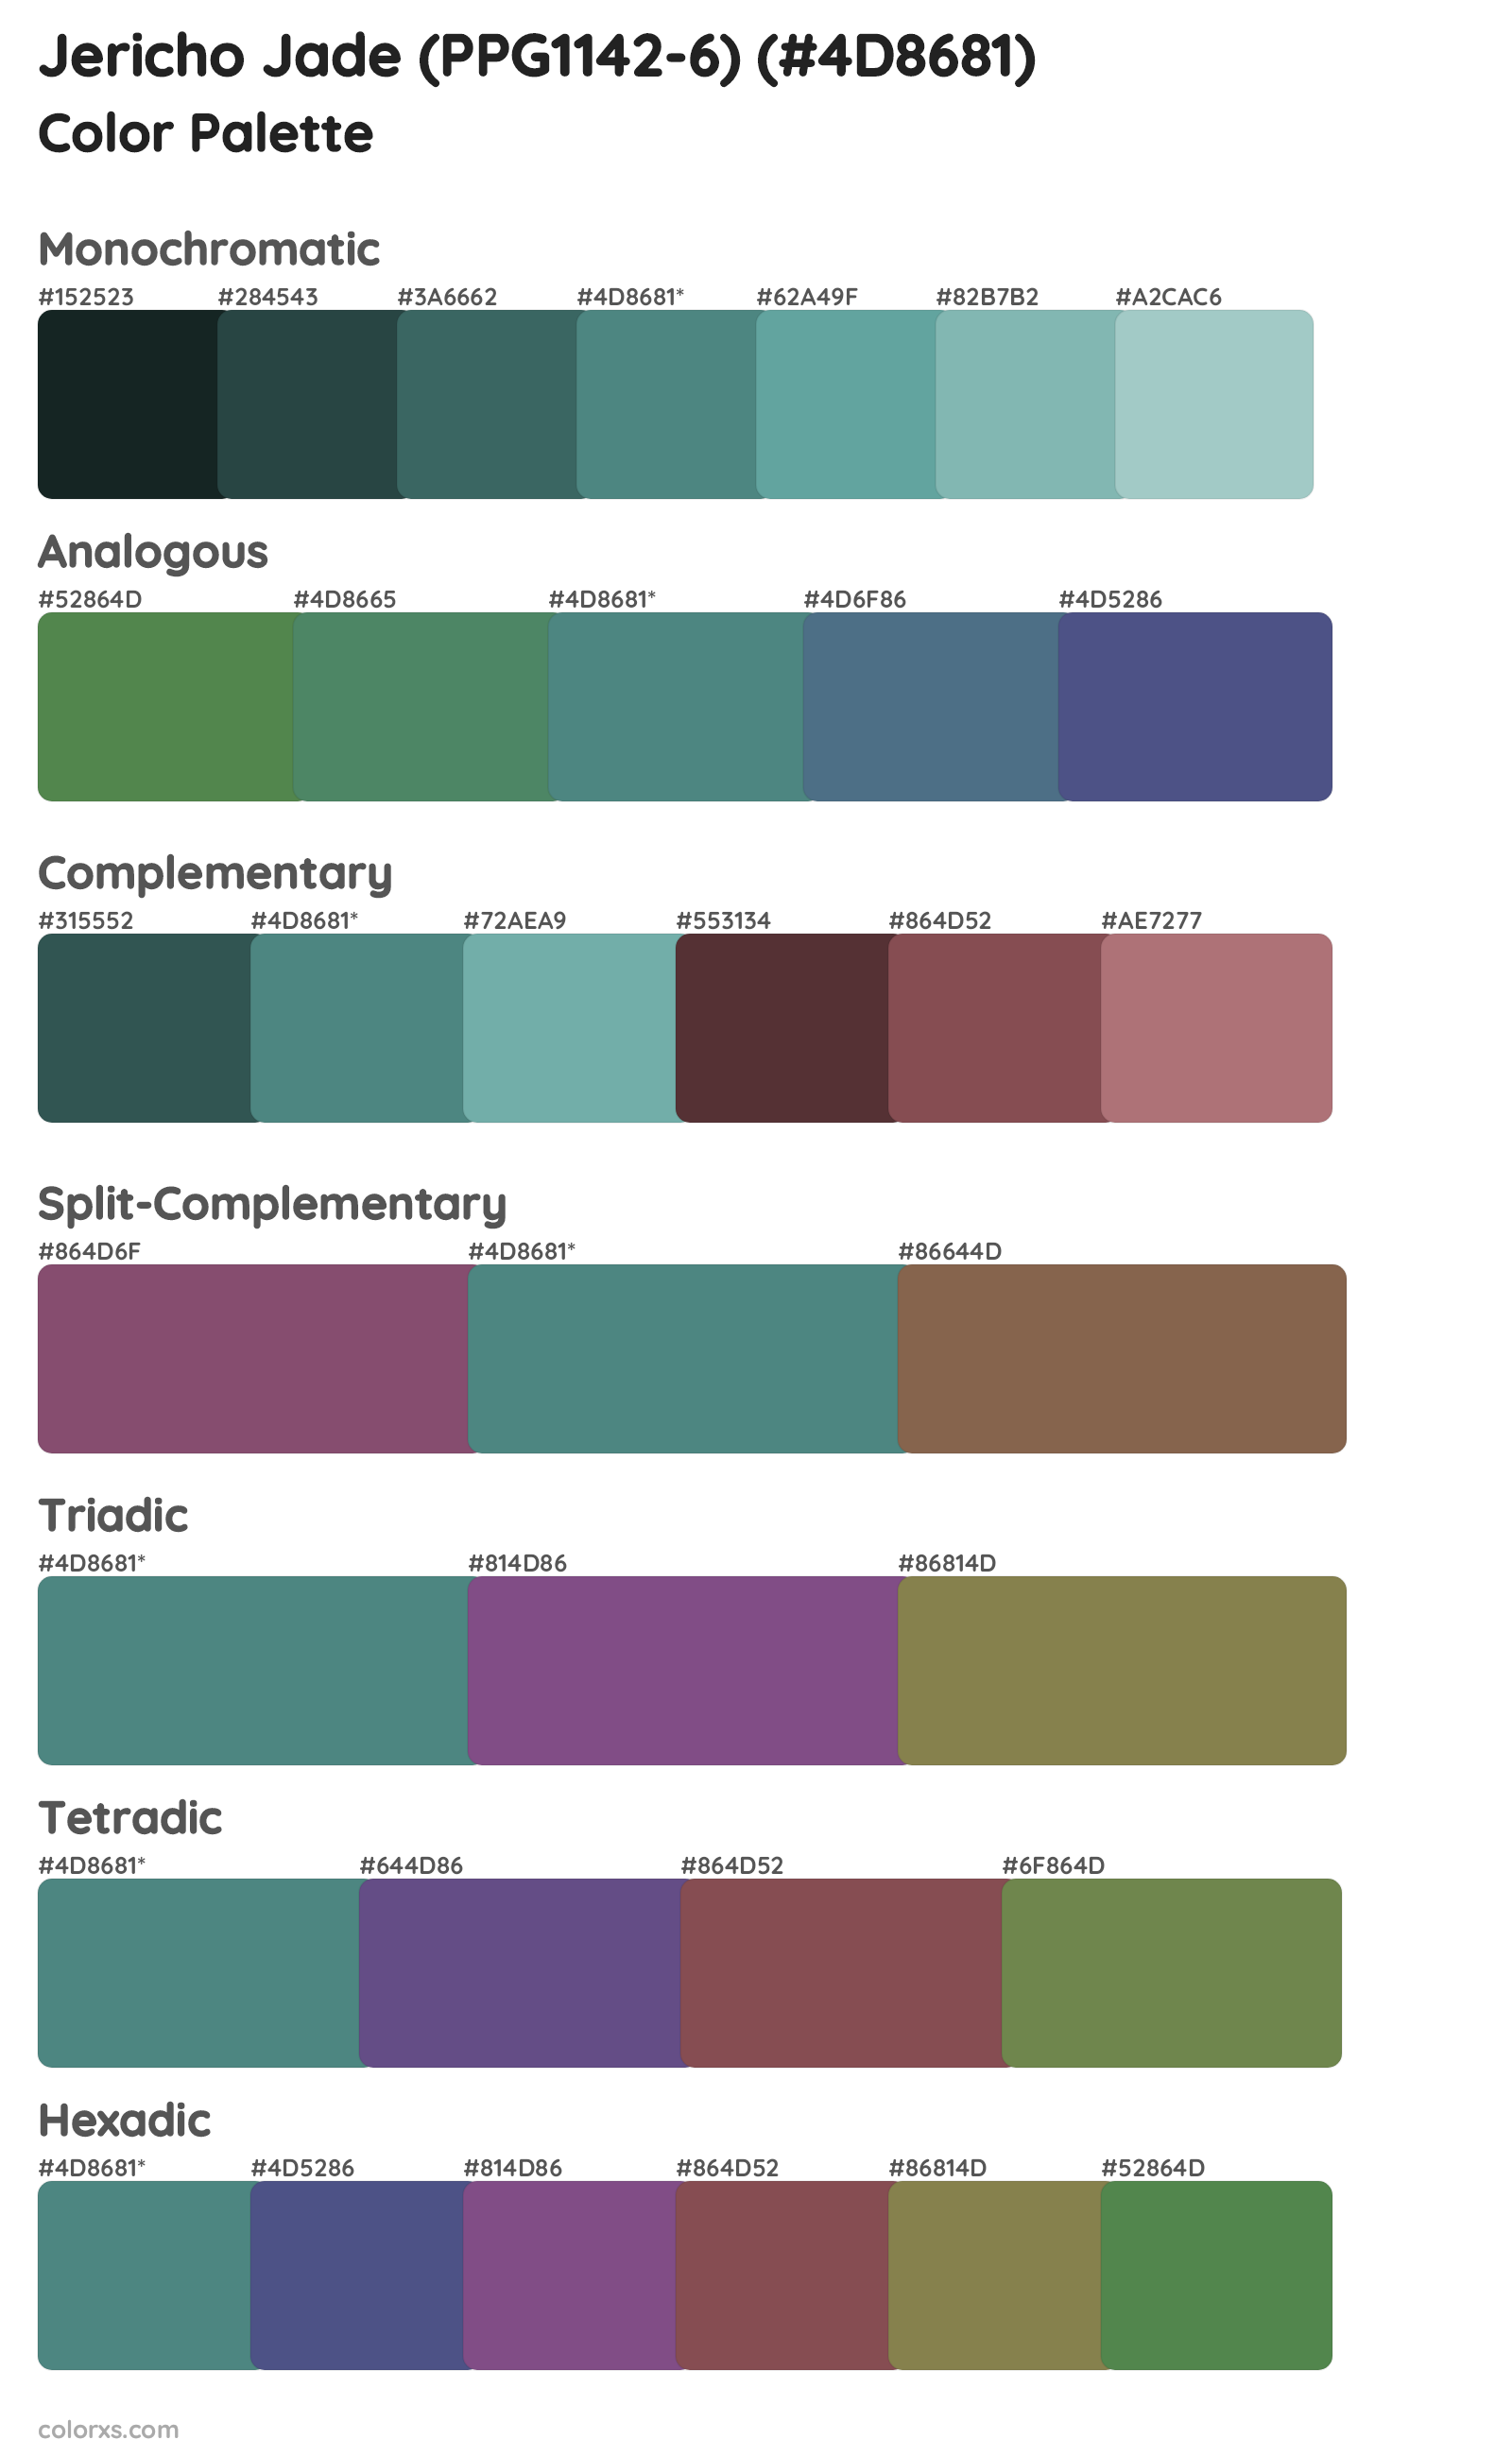 Jericho Jade (PPG1142-6) Color Scheme Palettes